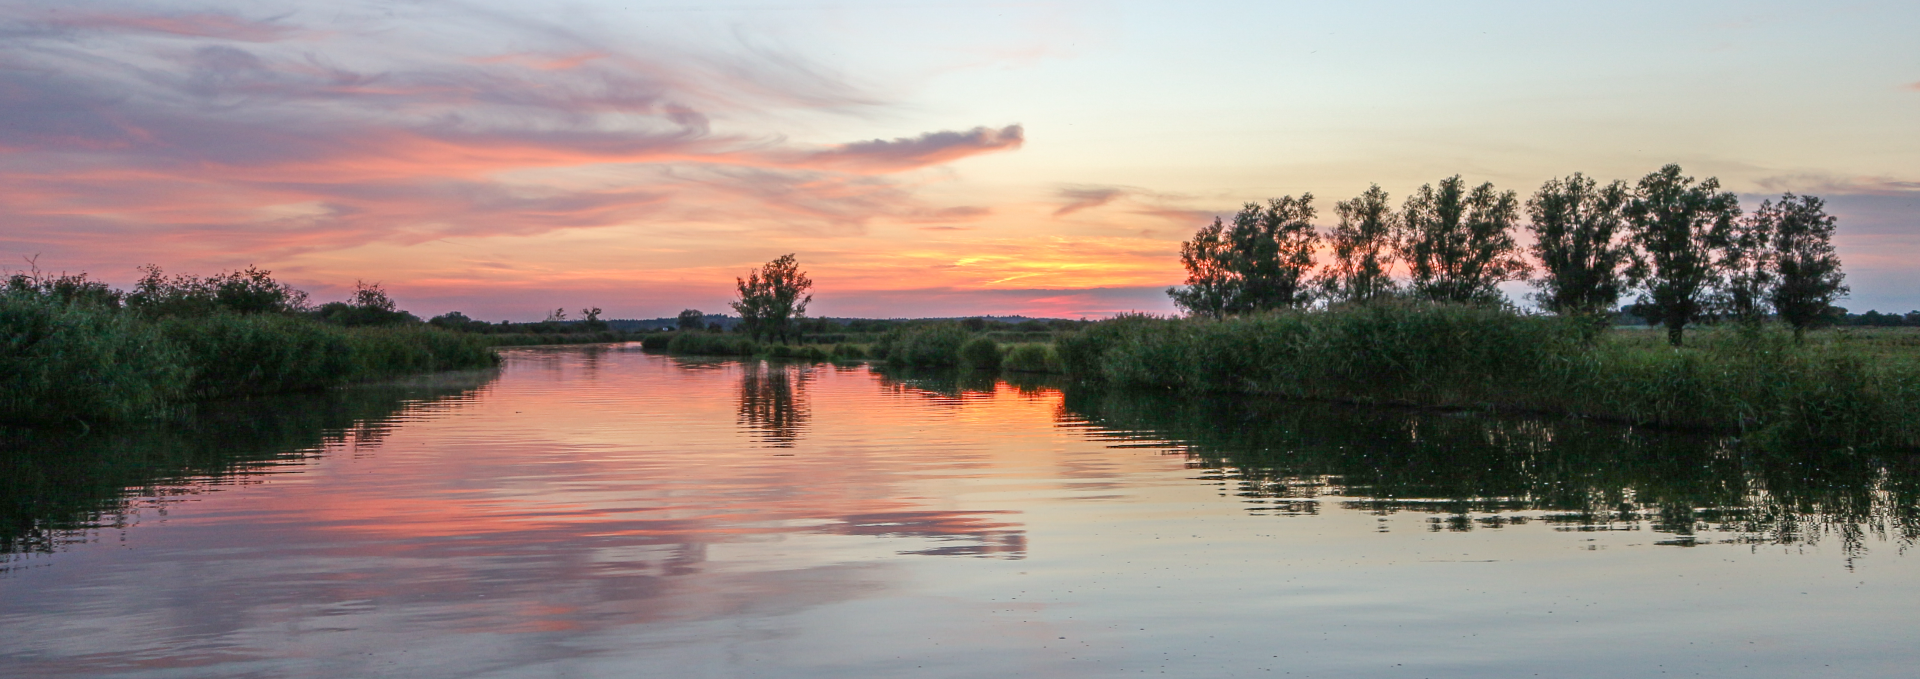 Unterwegs mit dem Hausboot zum Sonnenuntergang auf der Peene, © TMV/Witzel